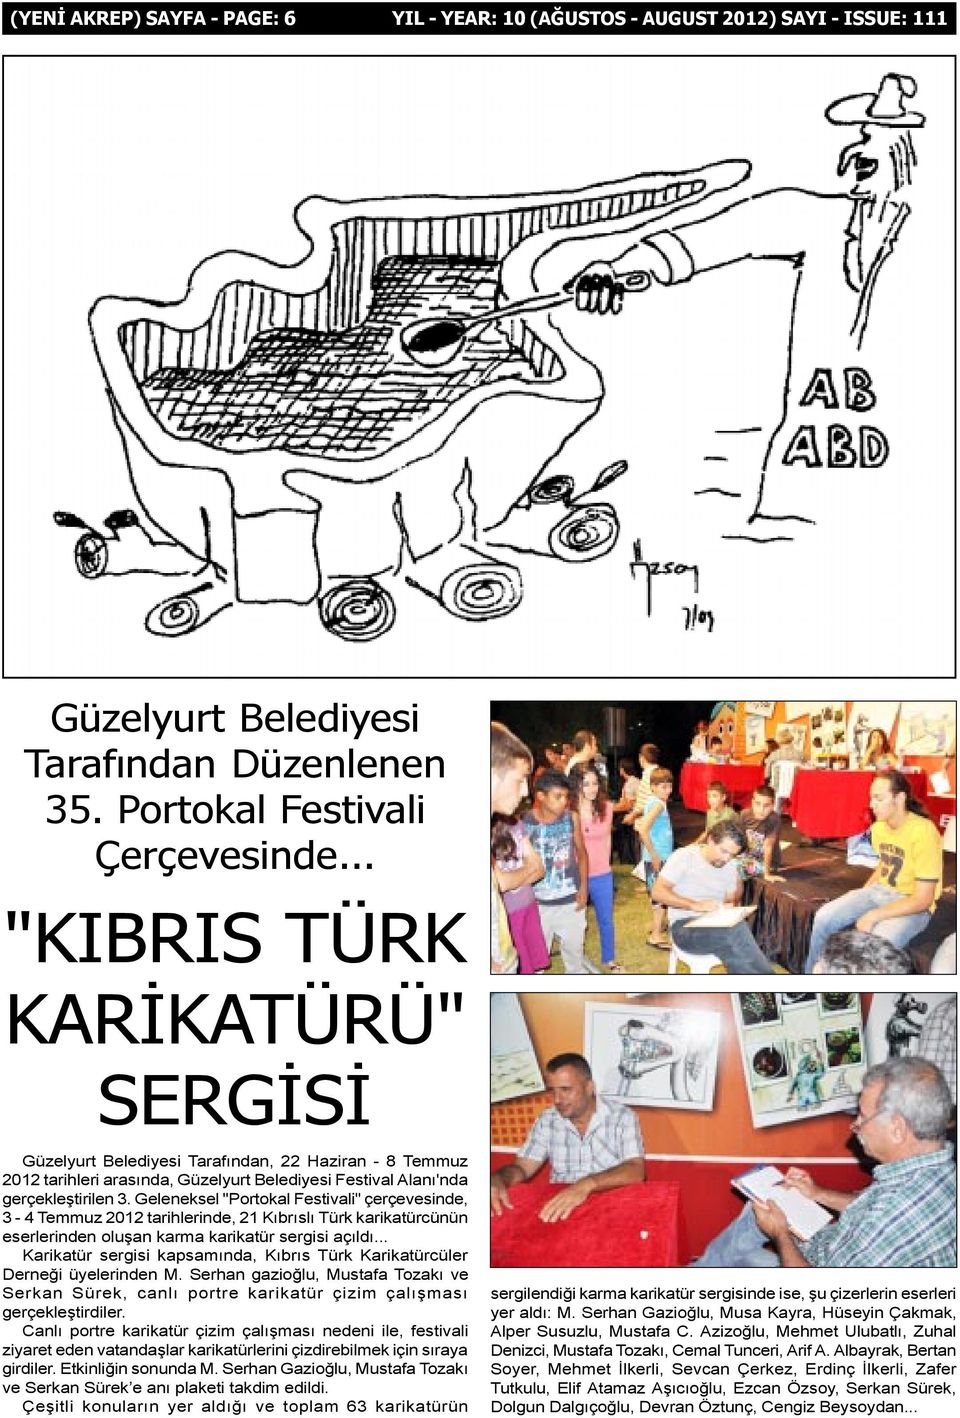 Geleneksel "Portokal Festivali" çerçevesinde, 3-4 Temmuz 2012 tarihlerinde, 21 Kýbrýslý Türk karikatürcünün eserlerinden oluþan karma karikatür sergisi açýldý.